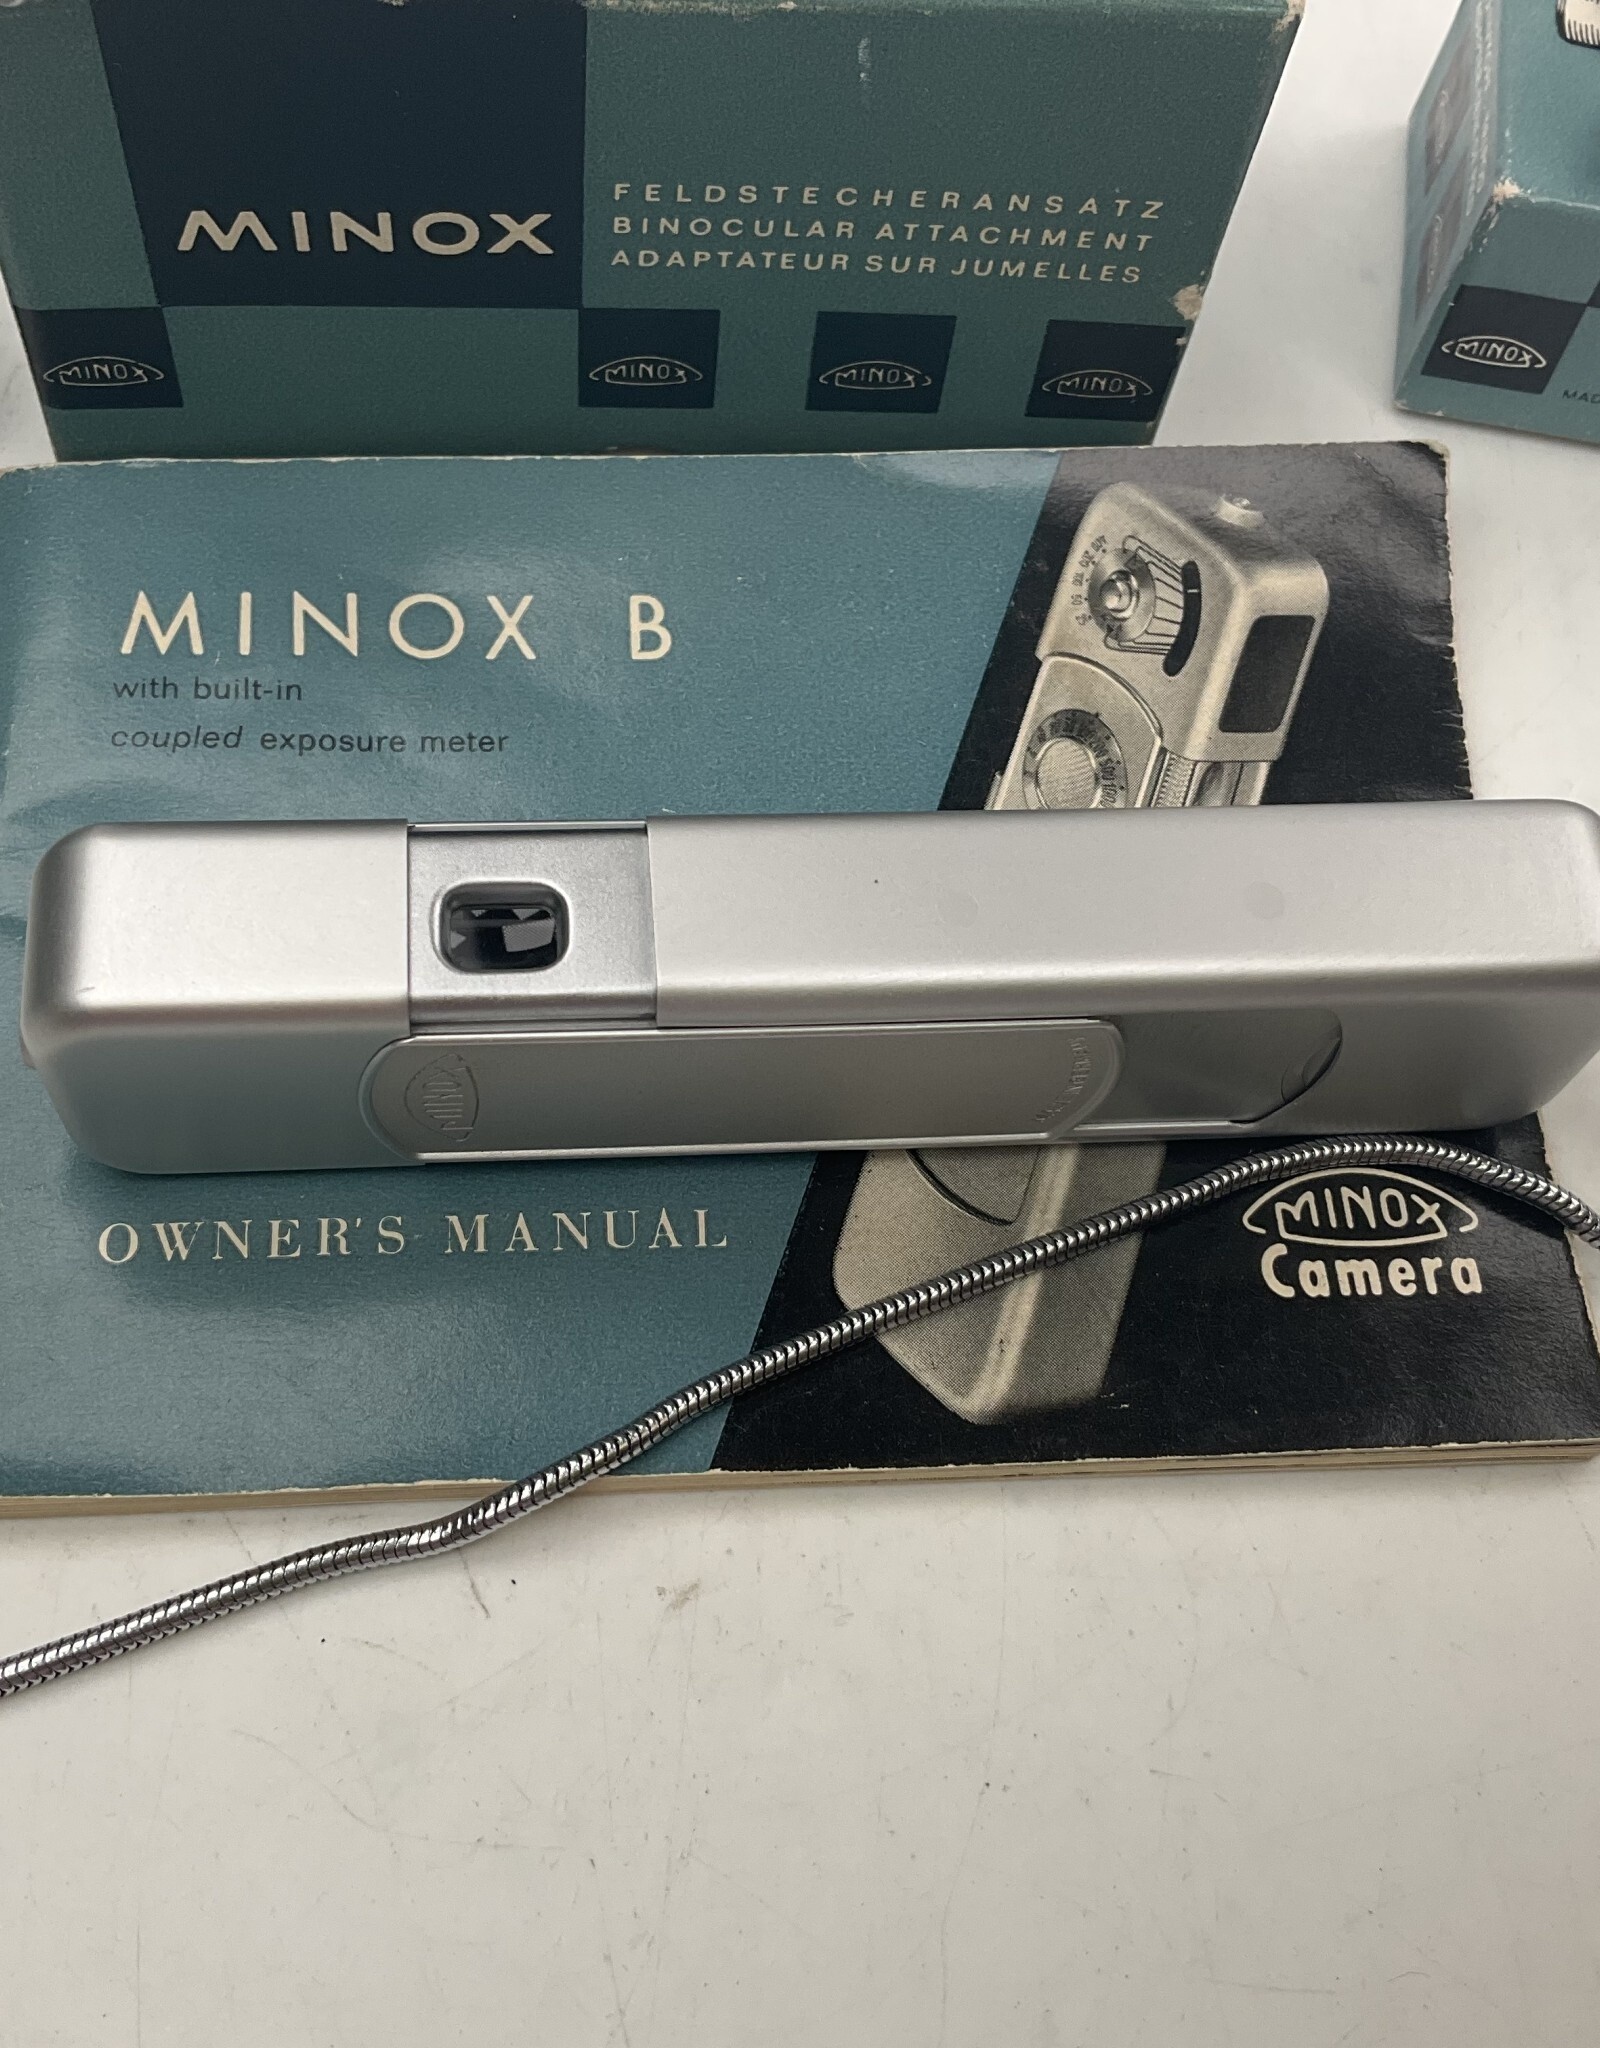 minox Minox B Outfit w/tripod adp, flash adp, binocullar adp, boxes Used EX